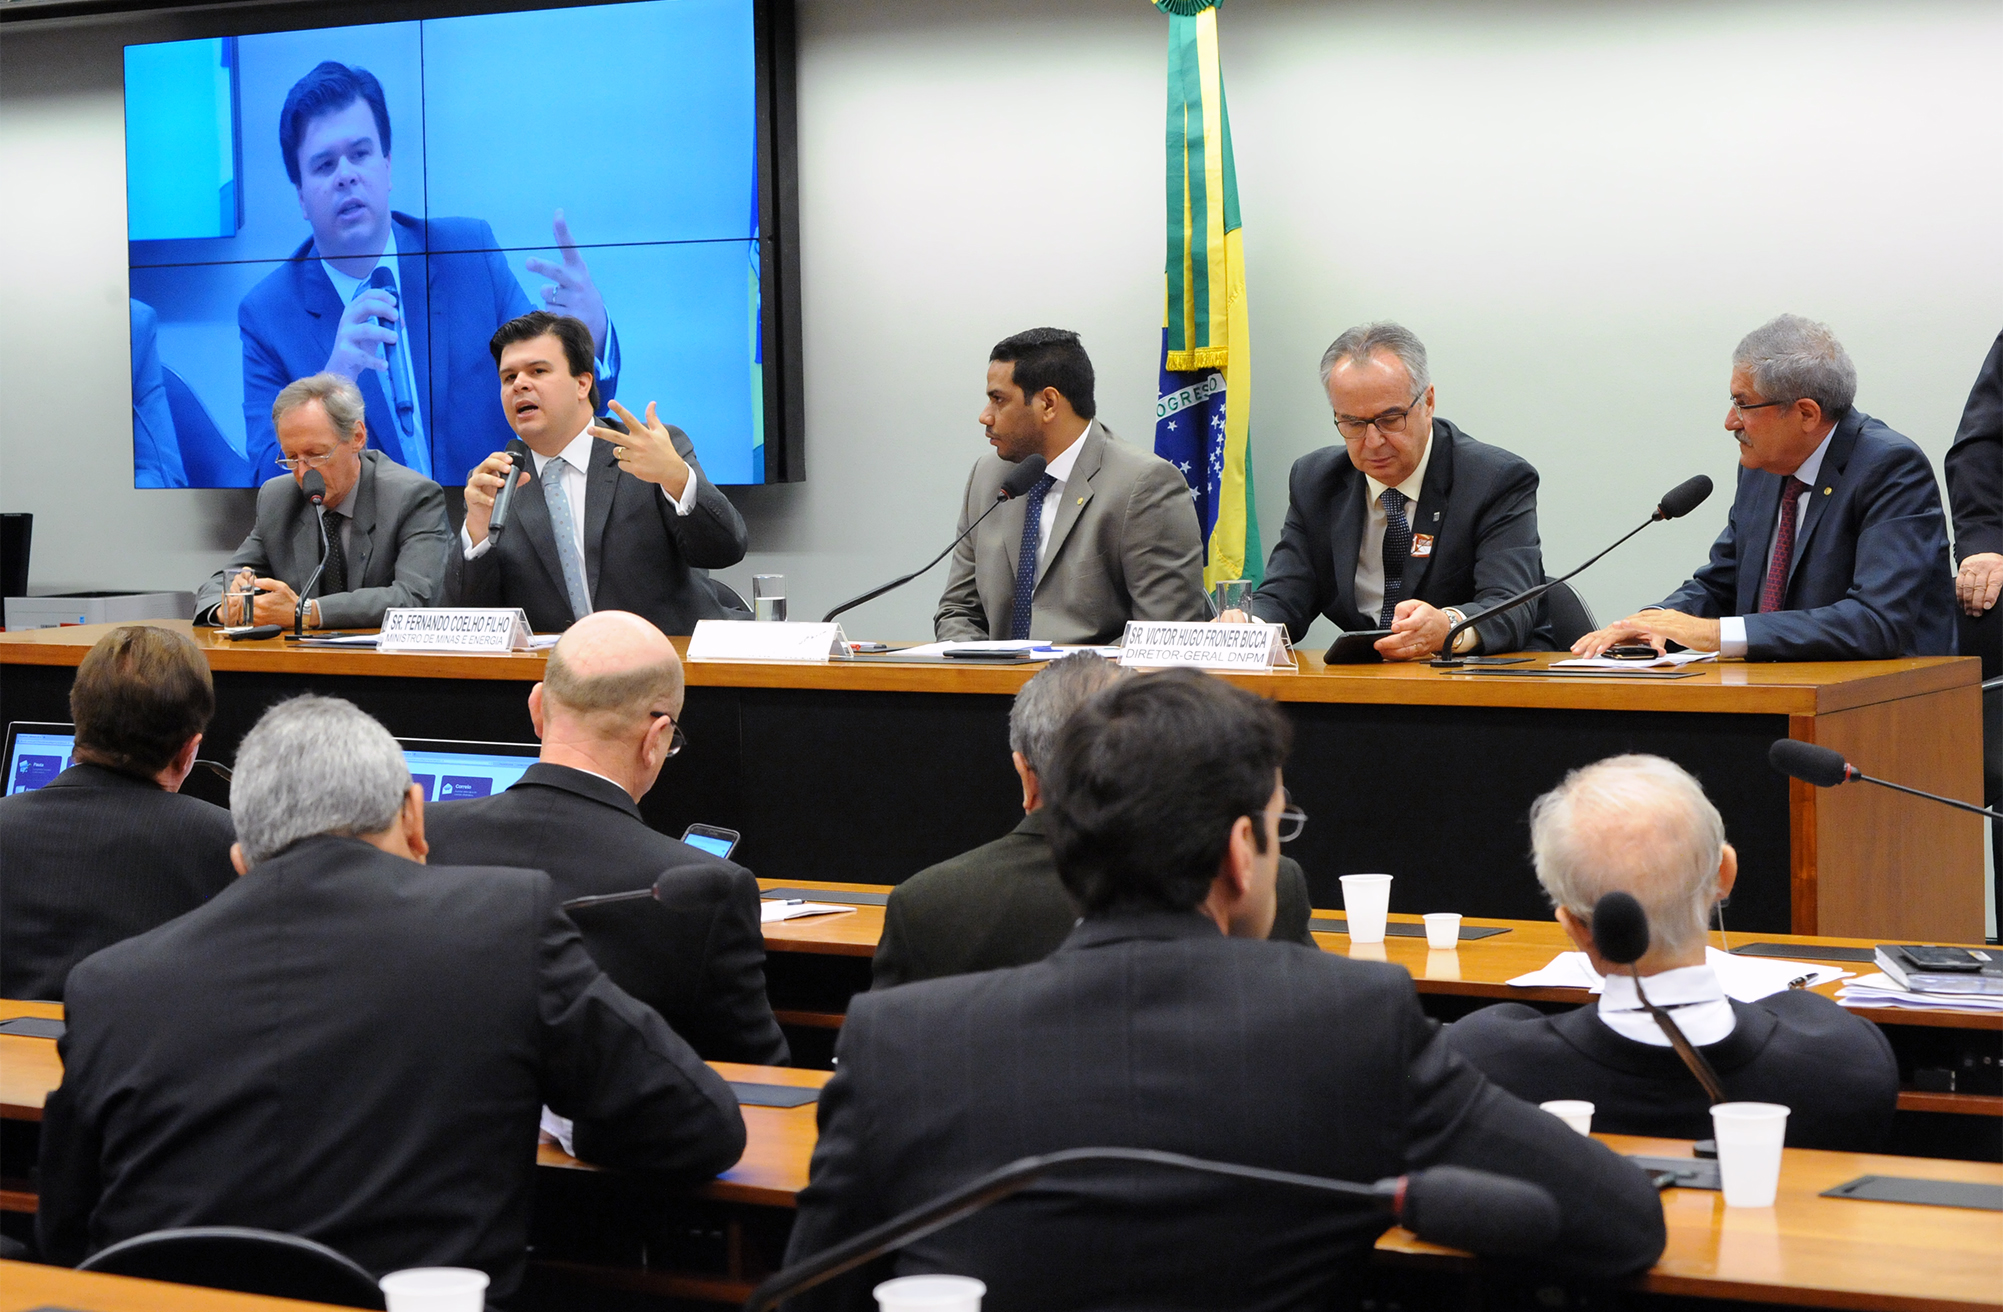 Ministro de Minas e Energia vem à Câmara explicar extinção de reserva na Amazônia e privatização da Eletrobras